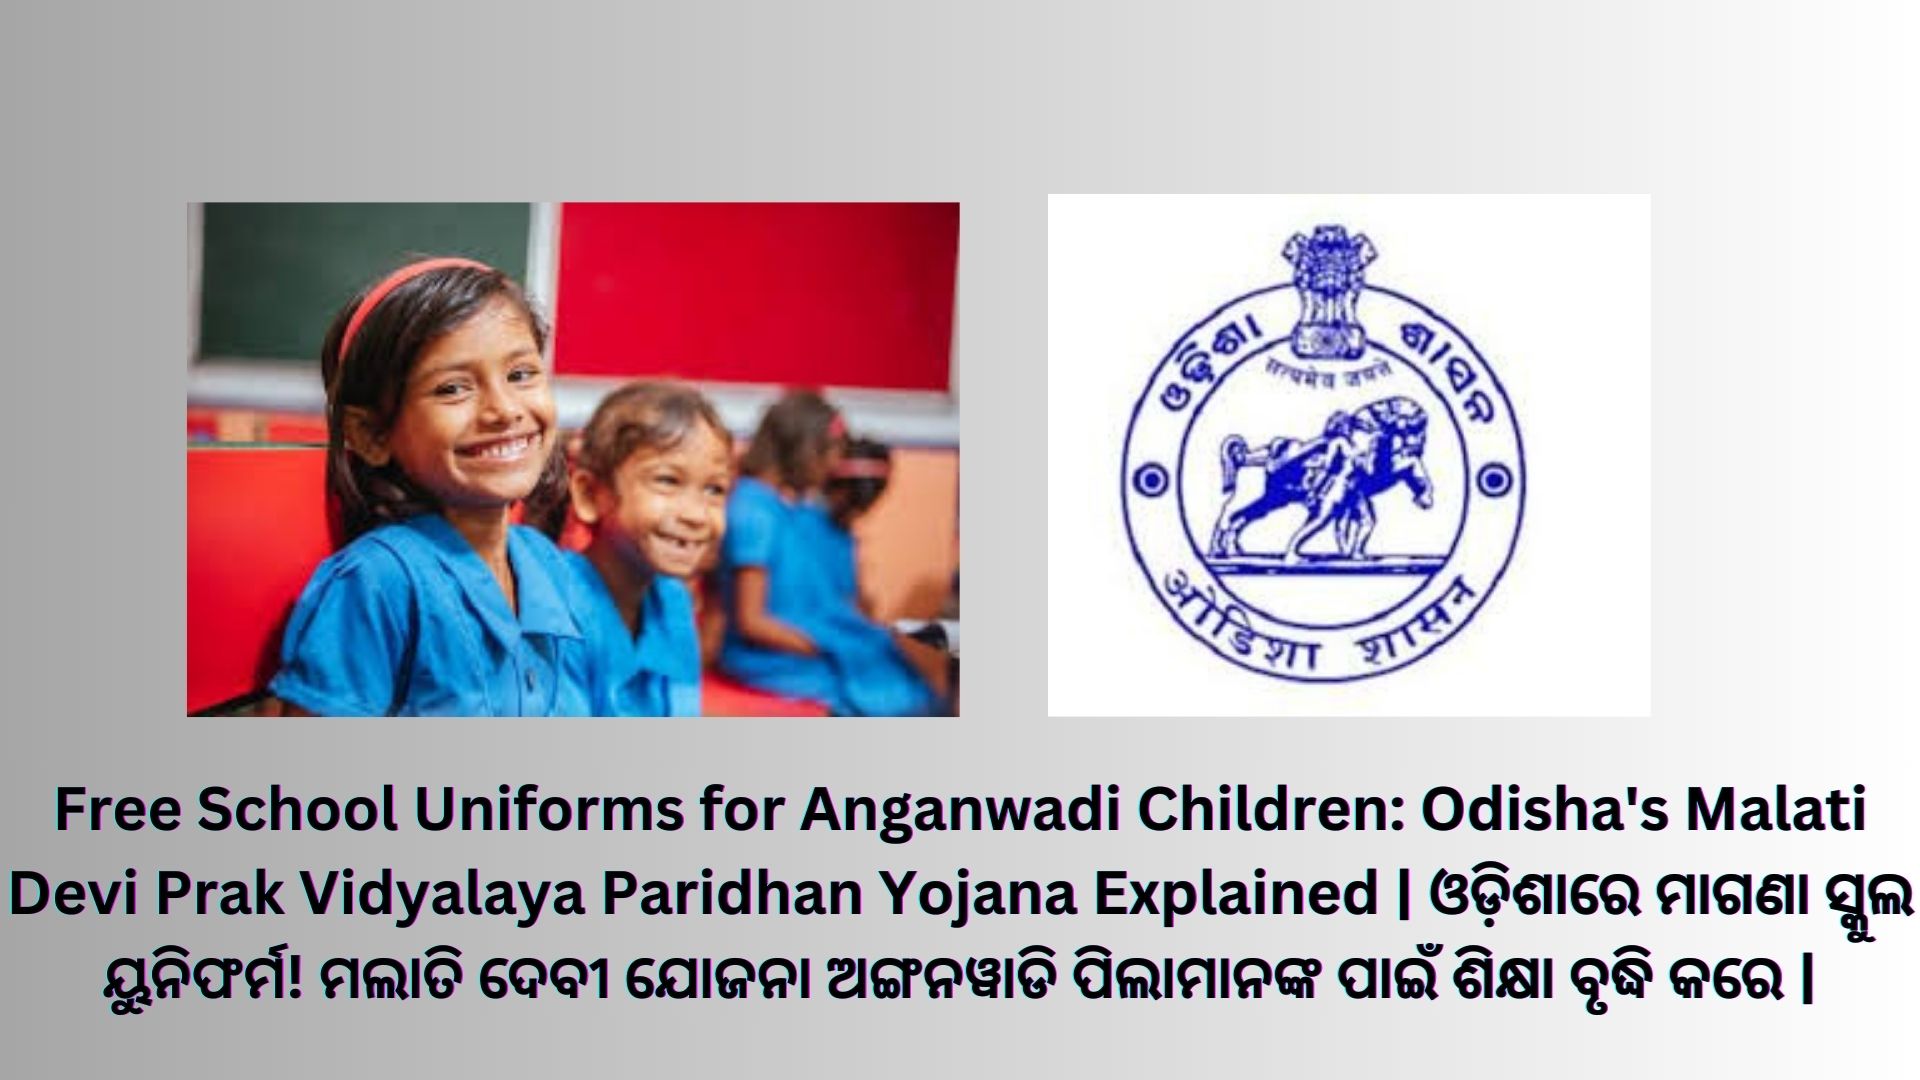 Free School Uniforms for Anganwadi Children: Odisha's Malati Devi Prak Vidyalaya Paridhan Yojana Explained | ଓଡ଼ିଶାରେ ମାଗଣା ସ୍କୁଲ ୟୁନିଫର୍ମ! ମଲାତି ଦେବୀ ଯୋଜନା ଅଙ୍ଗନୱାଡି ପିଲାମାନଙ୍କ ପାଇଁ ଶିକ୍ଷା ବୃଦ୍ଧି କରେ |